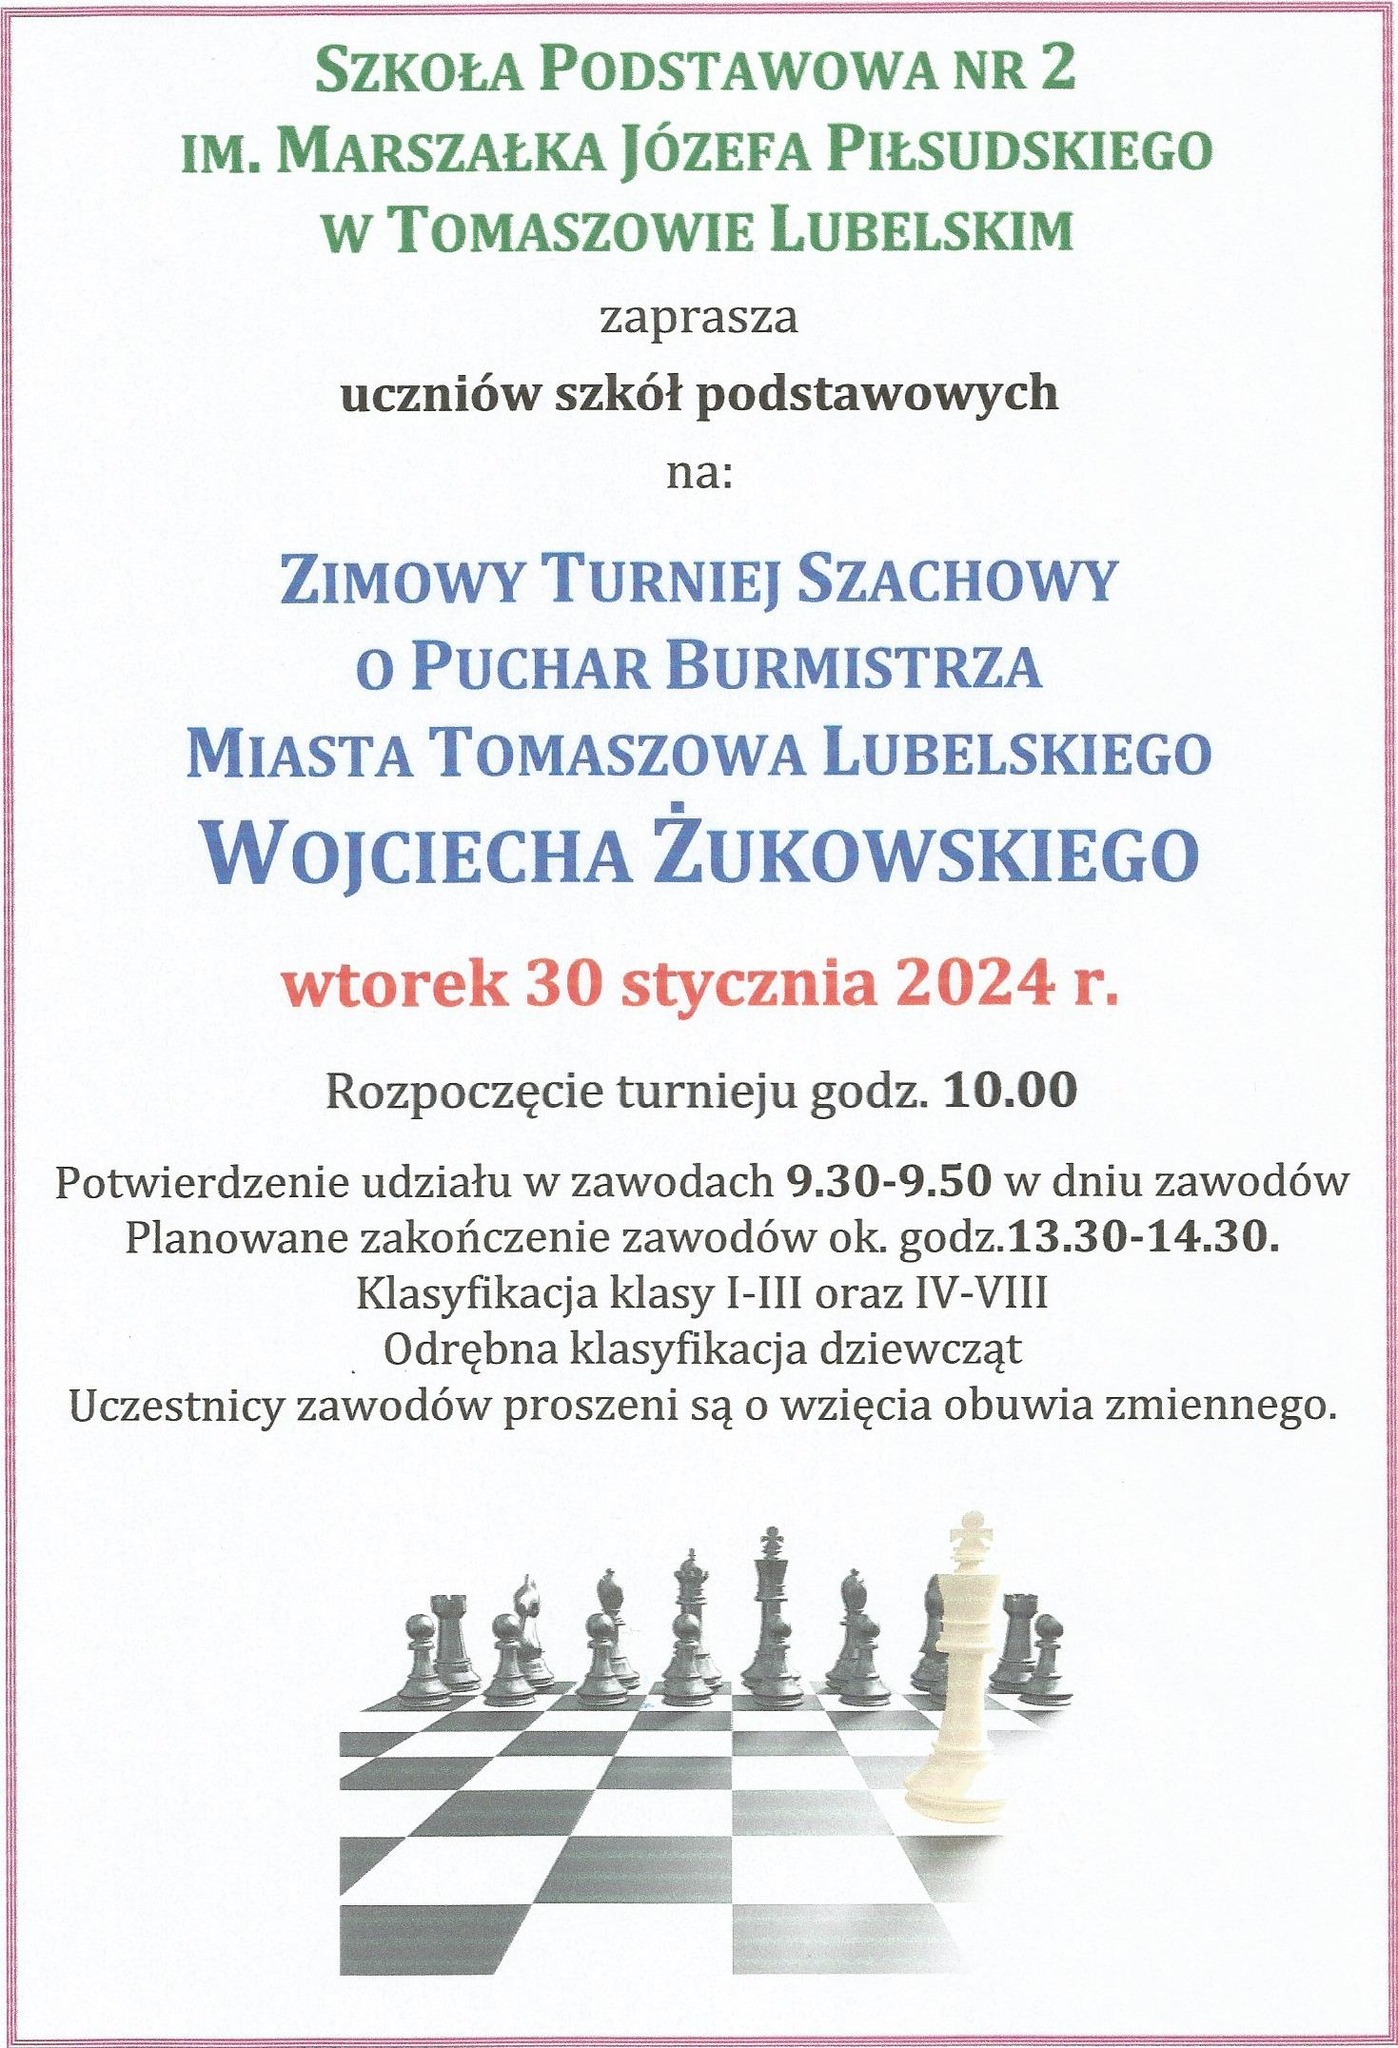 Zimowy turniej szachowy w Tomaszowie Lubelskim